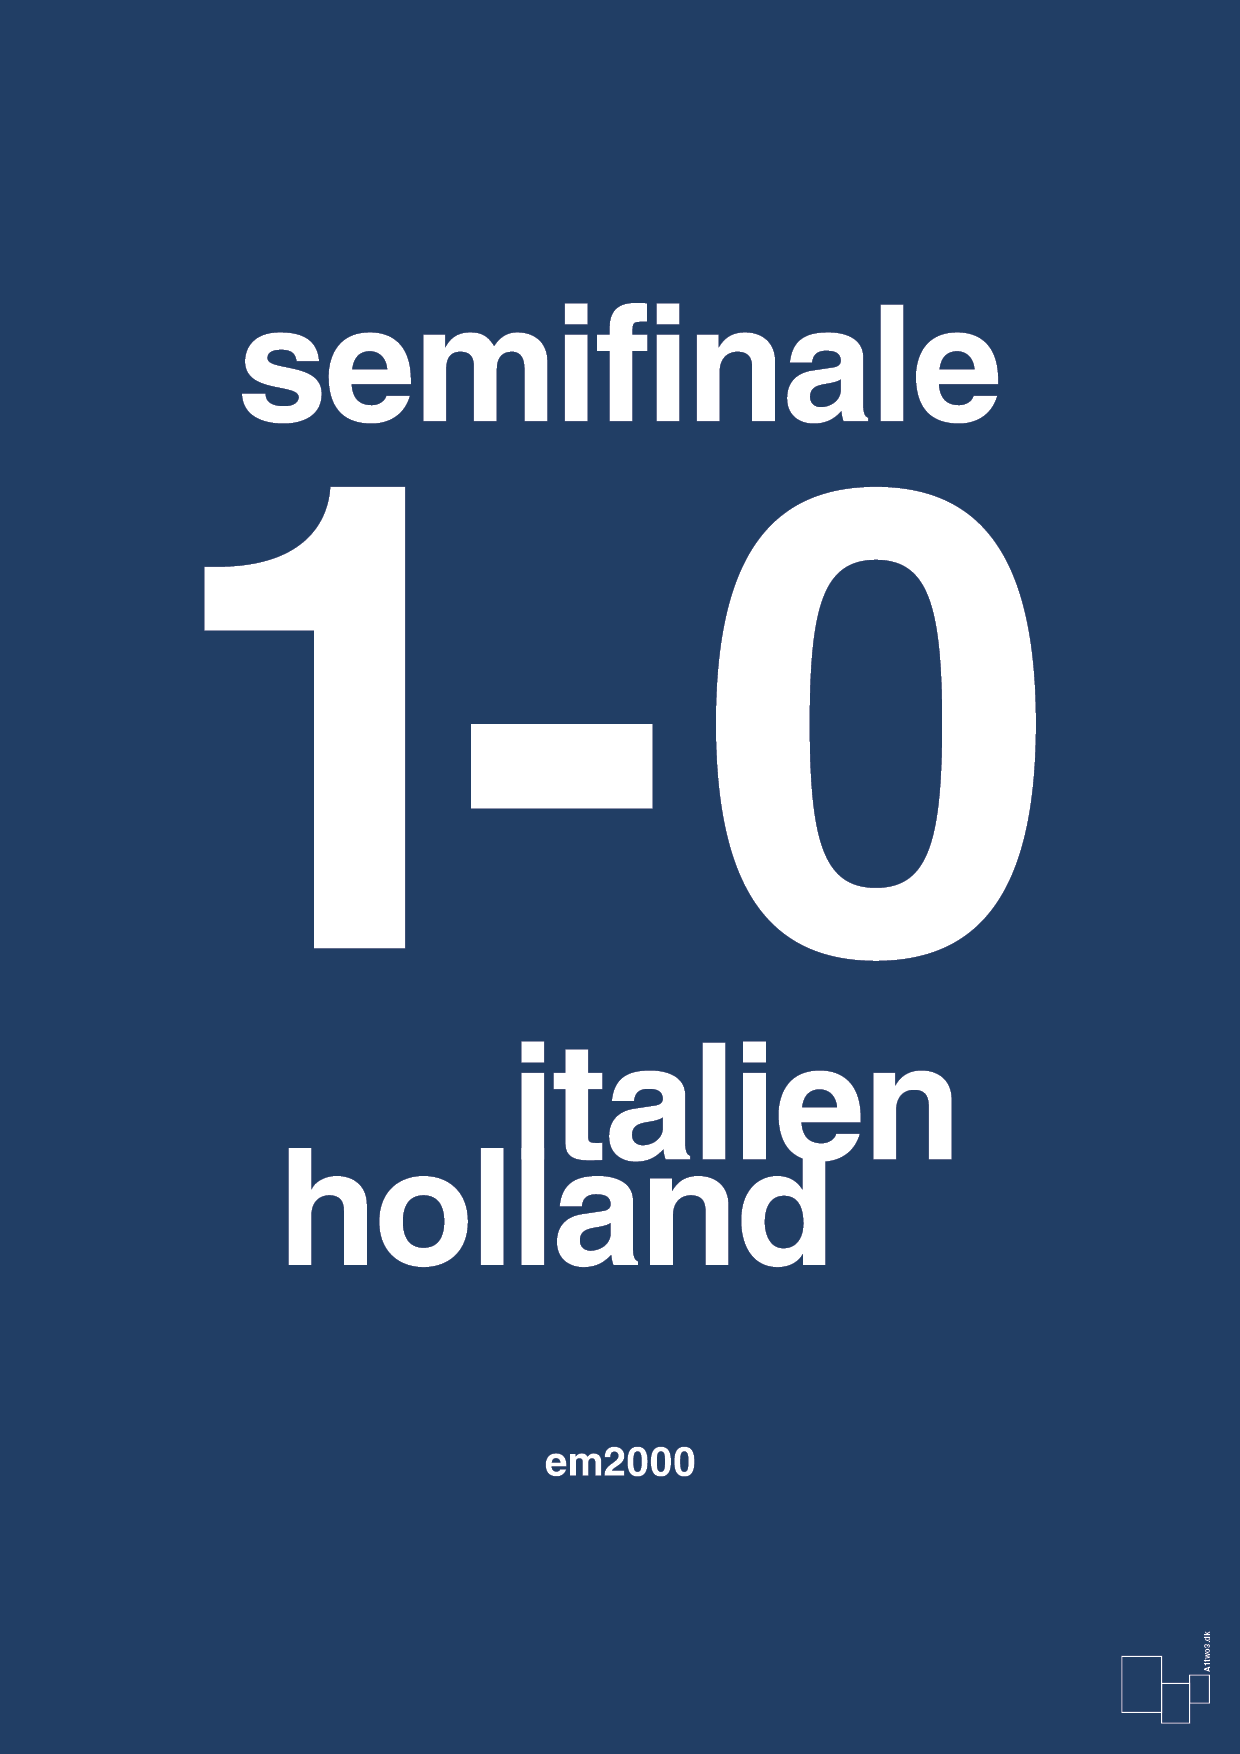 resultat for fodbold em semifinale A i 2000 - Plakat med Sport & Fritid i Lapis Blue